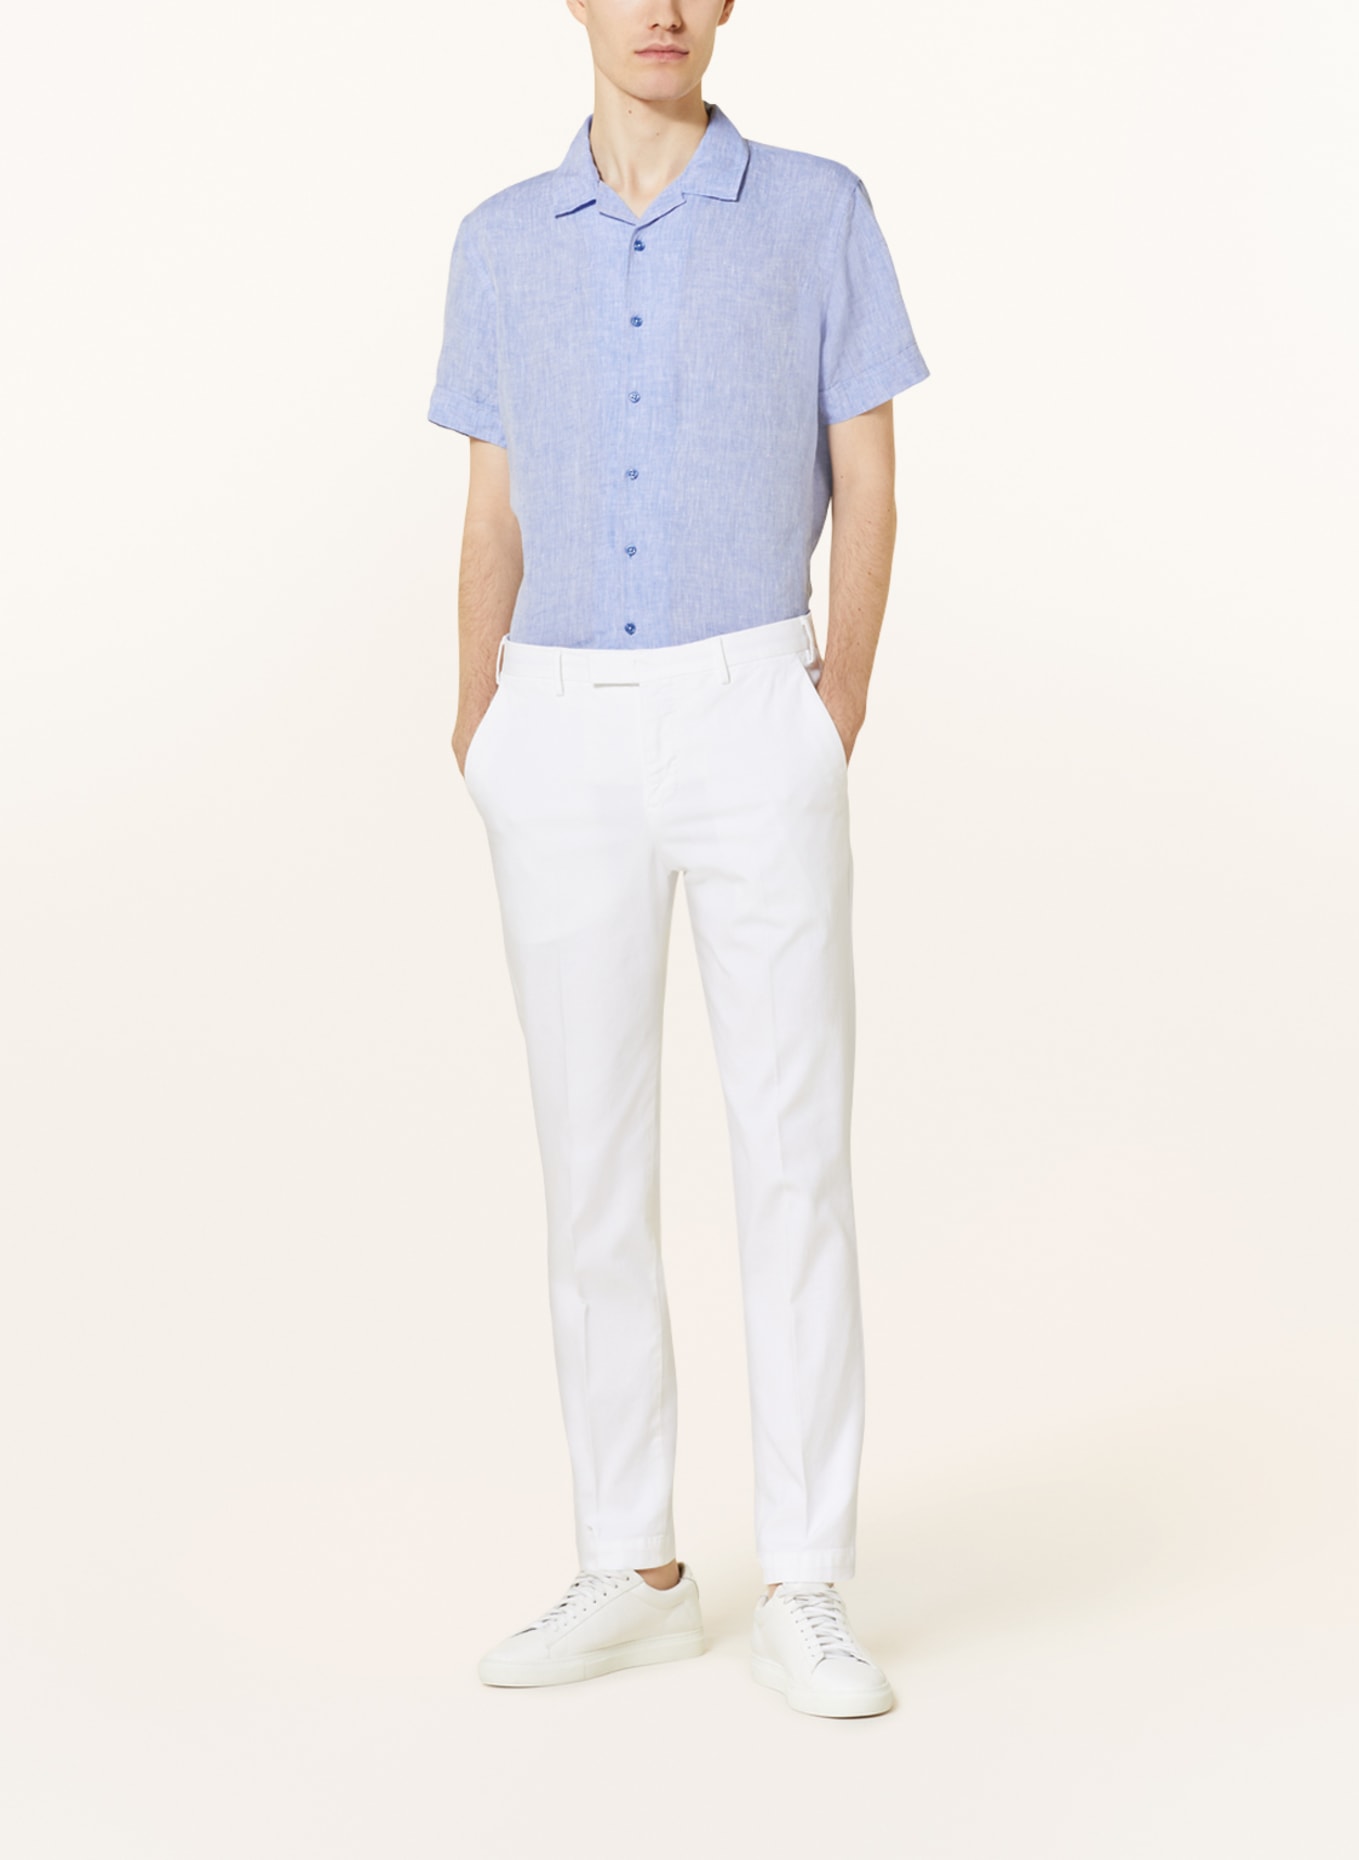 Q1 Manufaktur Short sleeve shirt extra slim fit made of linen, Color: LIGHT BLUE (Image 2)